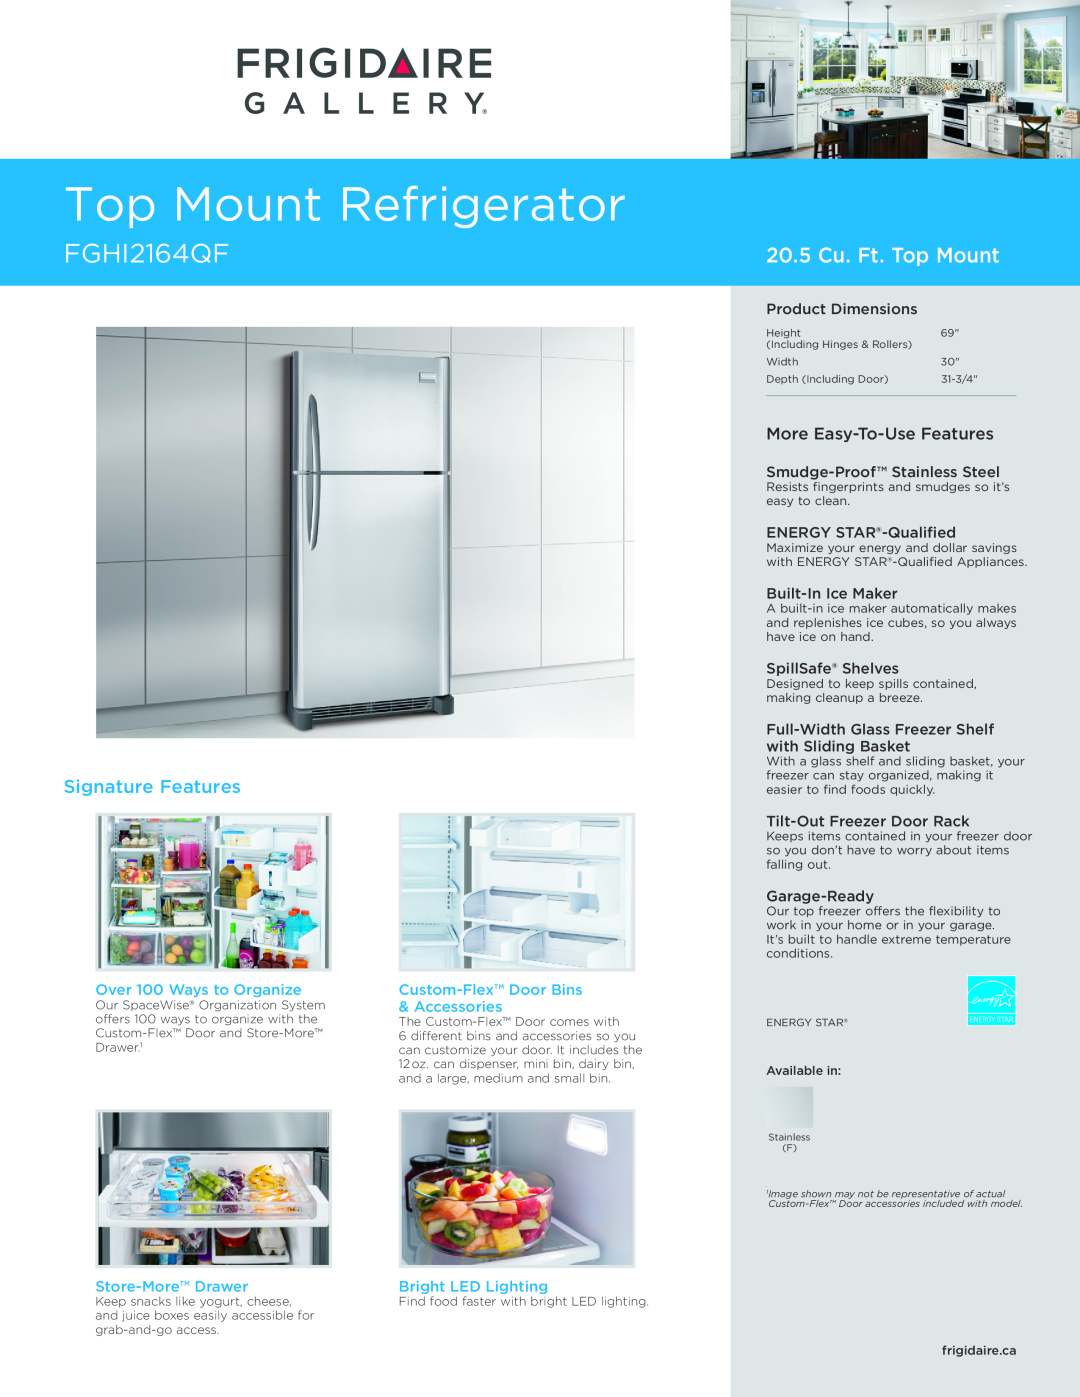 Frigidaire FGHI2164QF dimensions Top Mount Refrigerator, 20.5 Cu. Ft. Top Mount, Signature Features, Custom-FlexDoor Bins 